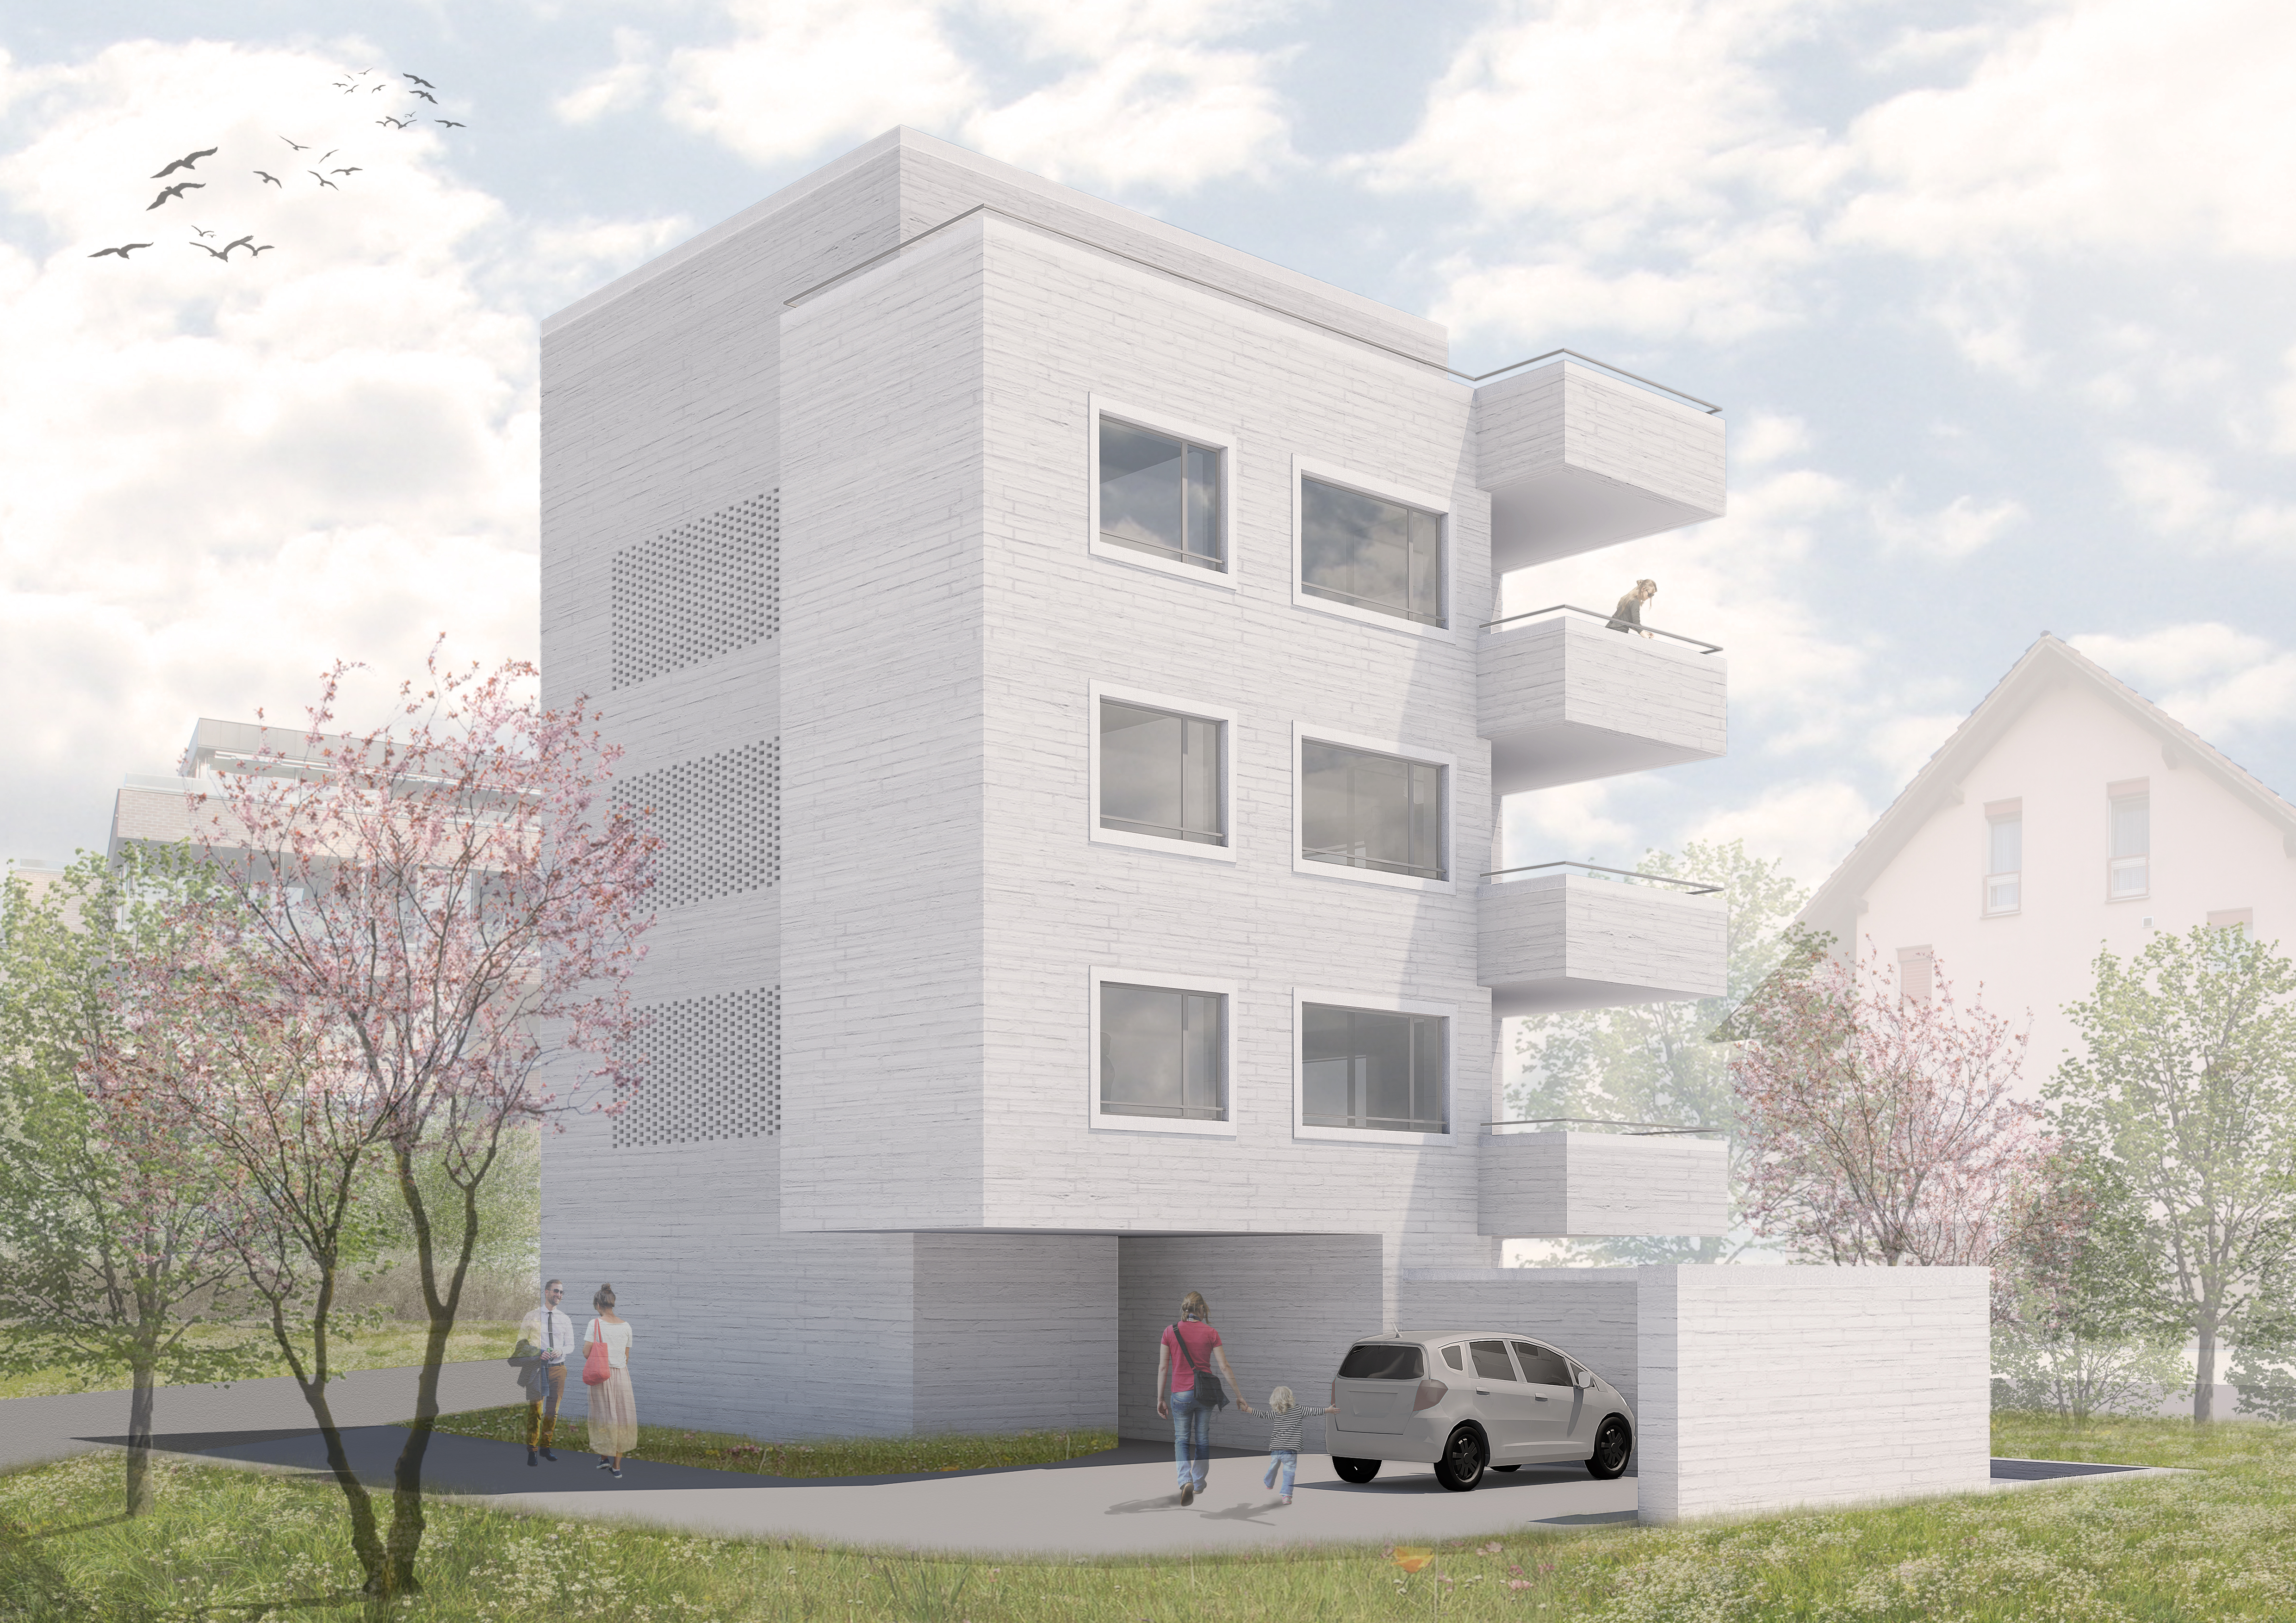 Mehrfamilienhaus Allmendweg Cham, Eggenspieler Architekten AG